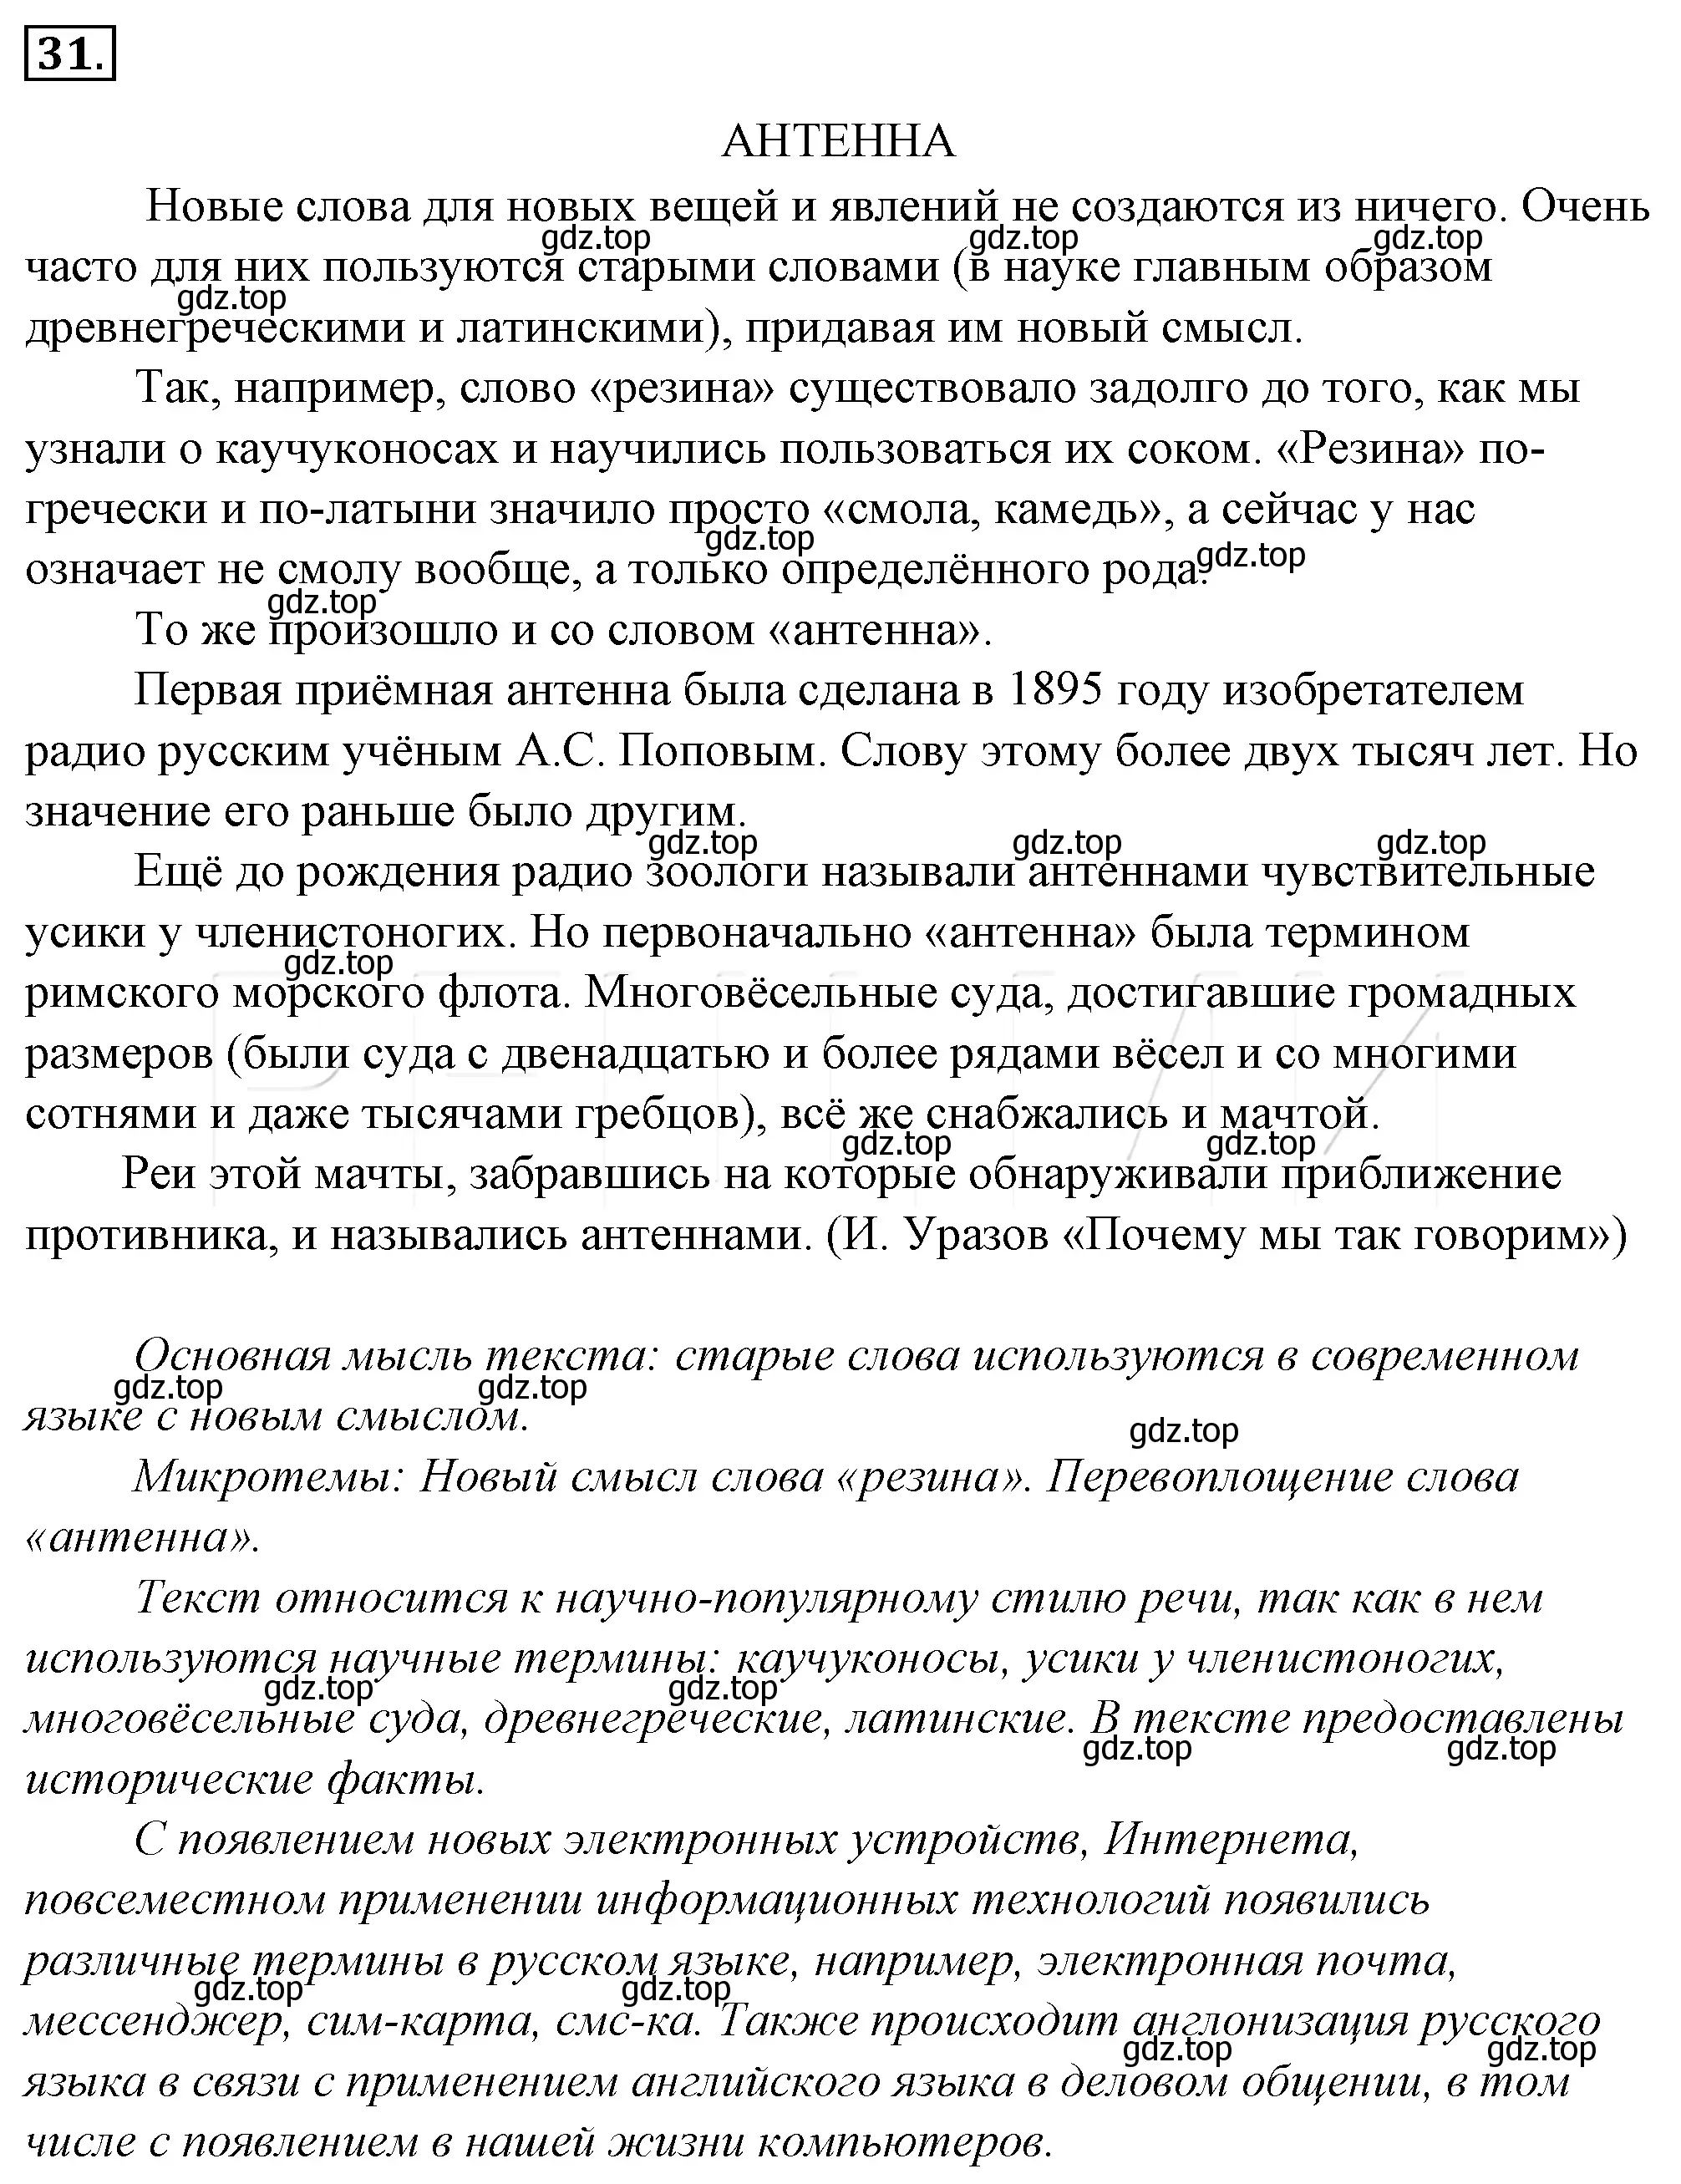 Решение 4. номер 52 (страница 52) гдз по русскому языку 10-11 класс Гольцова, Шамшин, учебник 1 часть